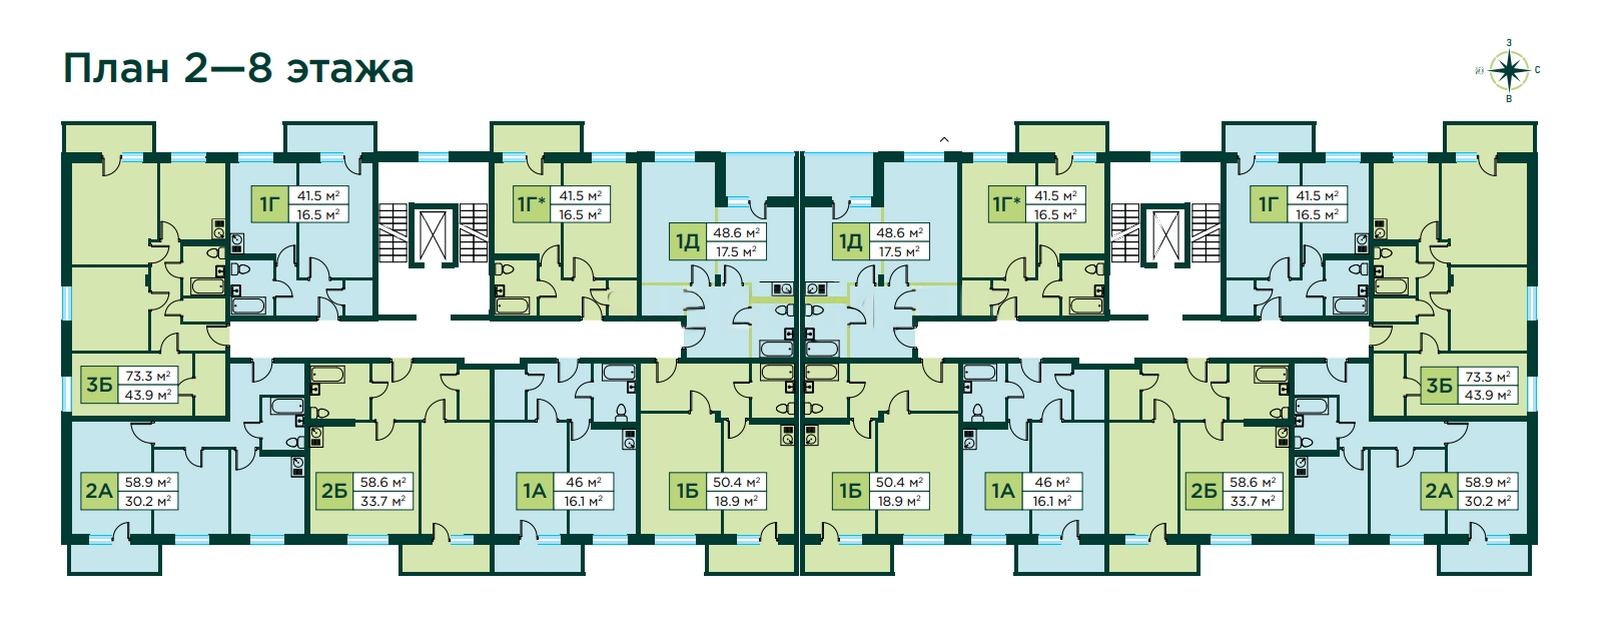 План 2- 8 этажи